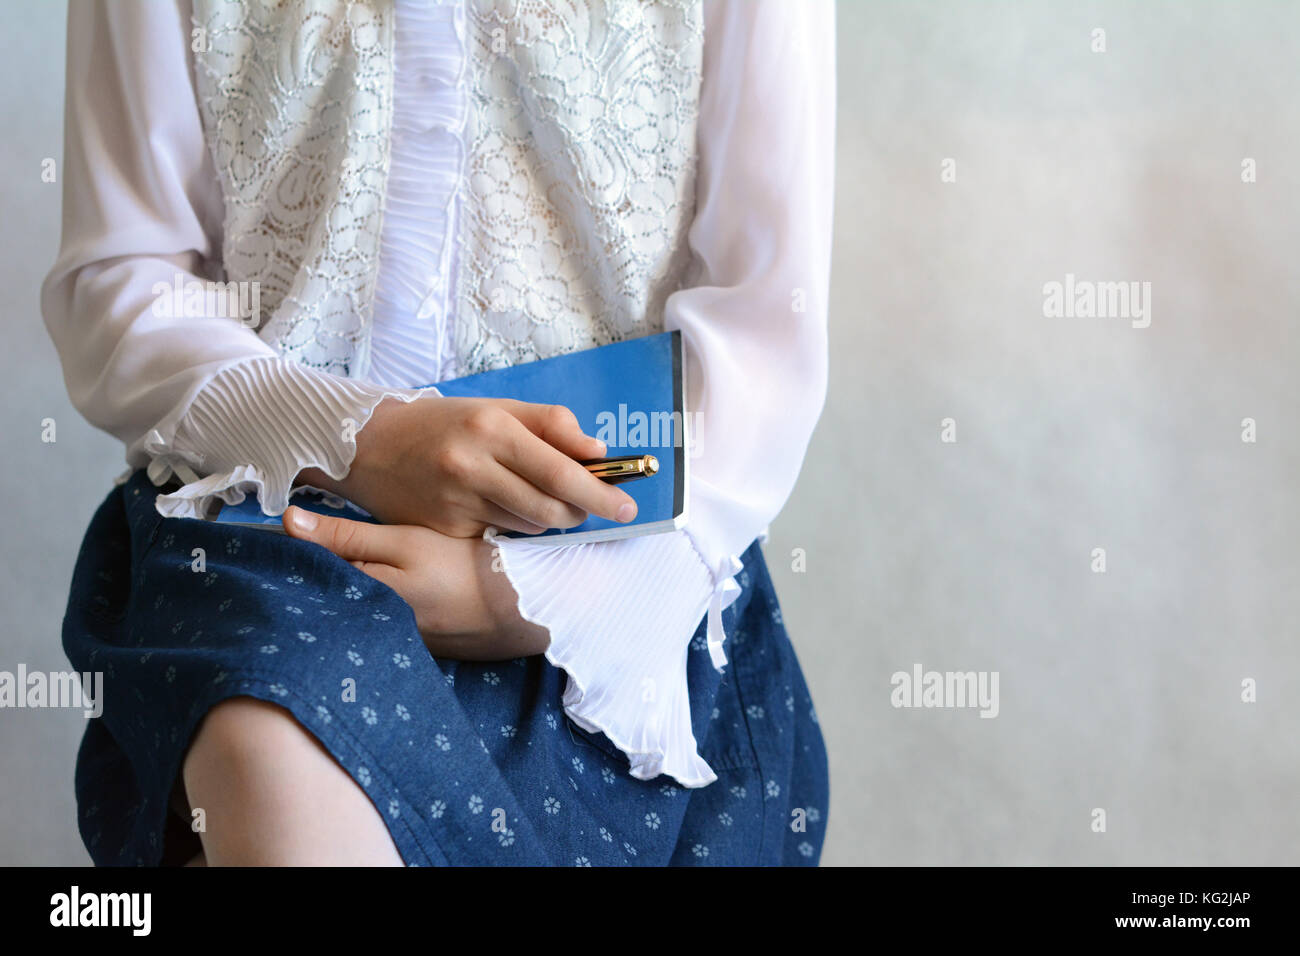 Première journée à l'école - une fille portant un chemisier blanc et une jupe bleu foncé Banque D'Images